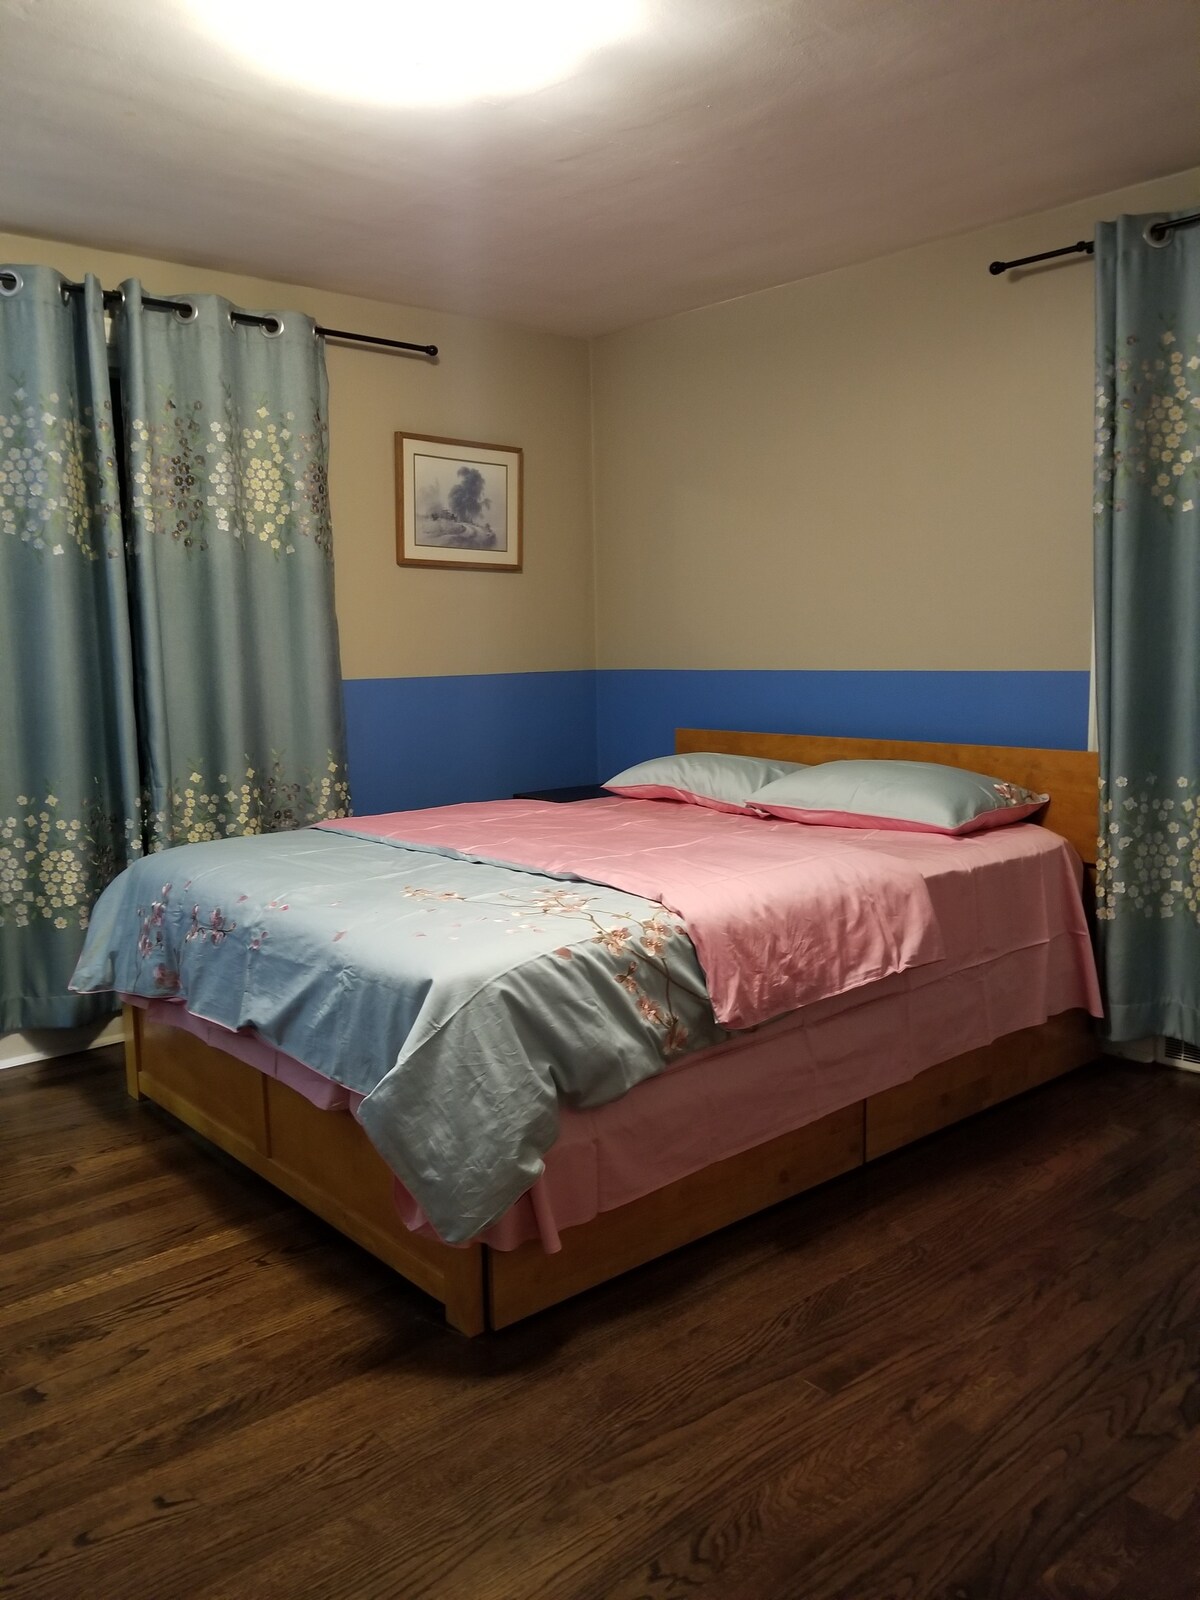 Quiet bedroom Near UW & Children’s Hospital